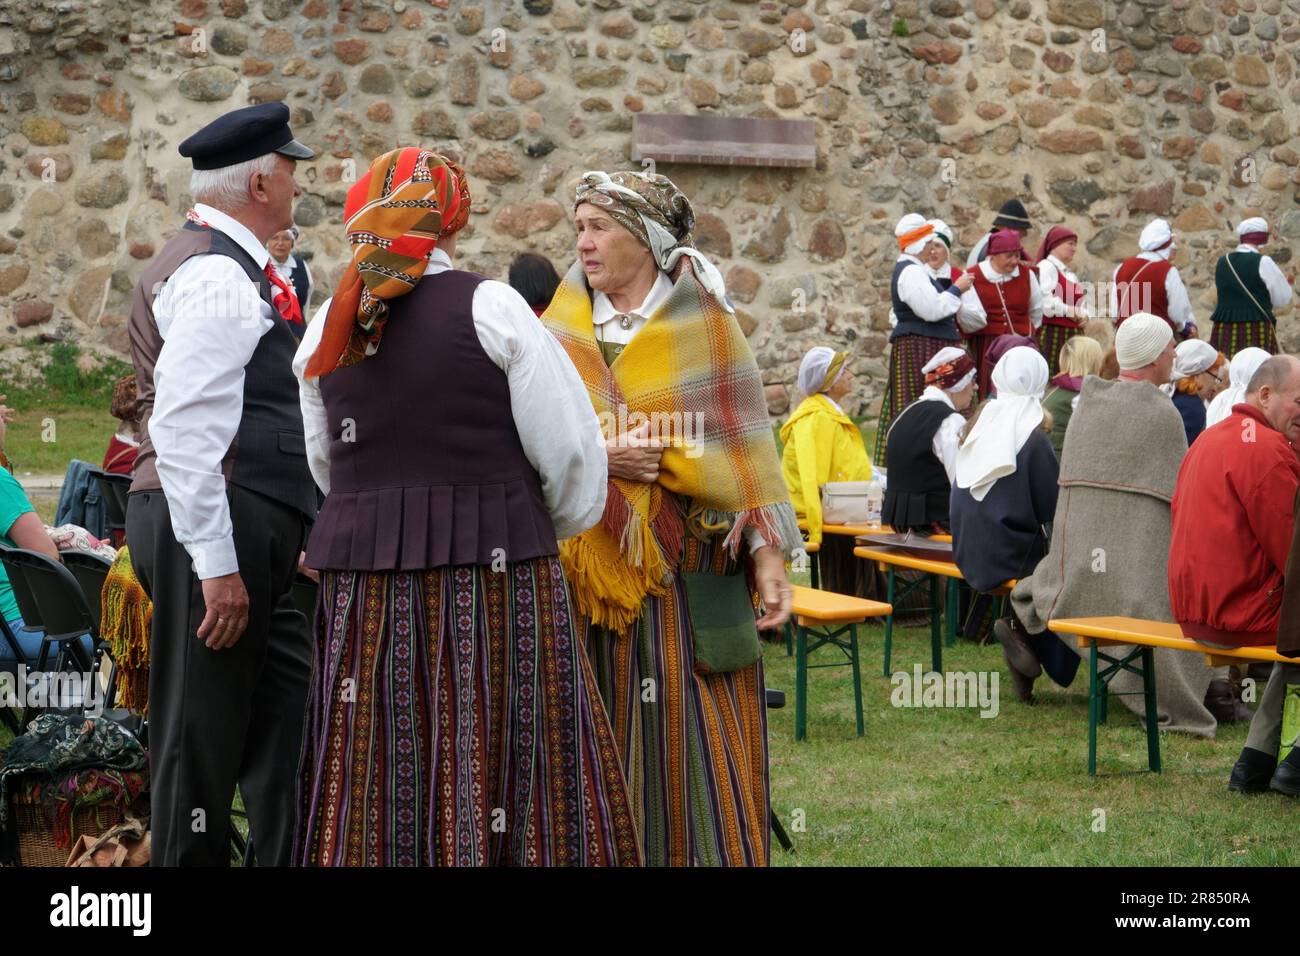 Dobele, Lettland - 27. Mai 2023. Die lettische Folklore und die traditionelle Volkskultur. Seniorengruppe in lettischen Nationalkostümen bei einem Cultu-Fest Stockfoto